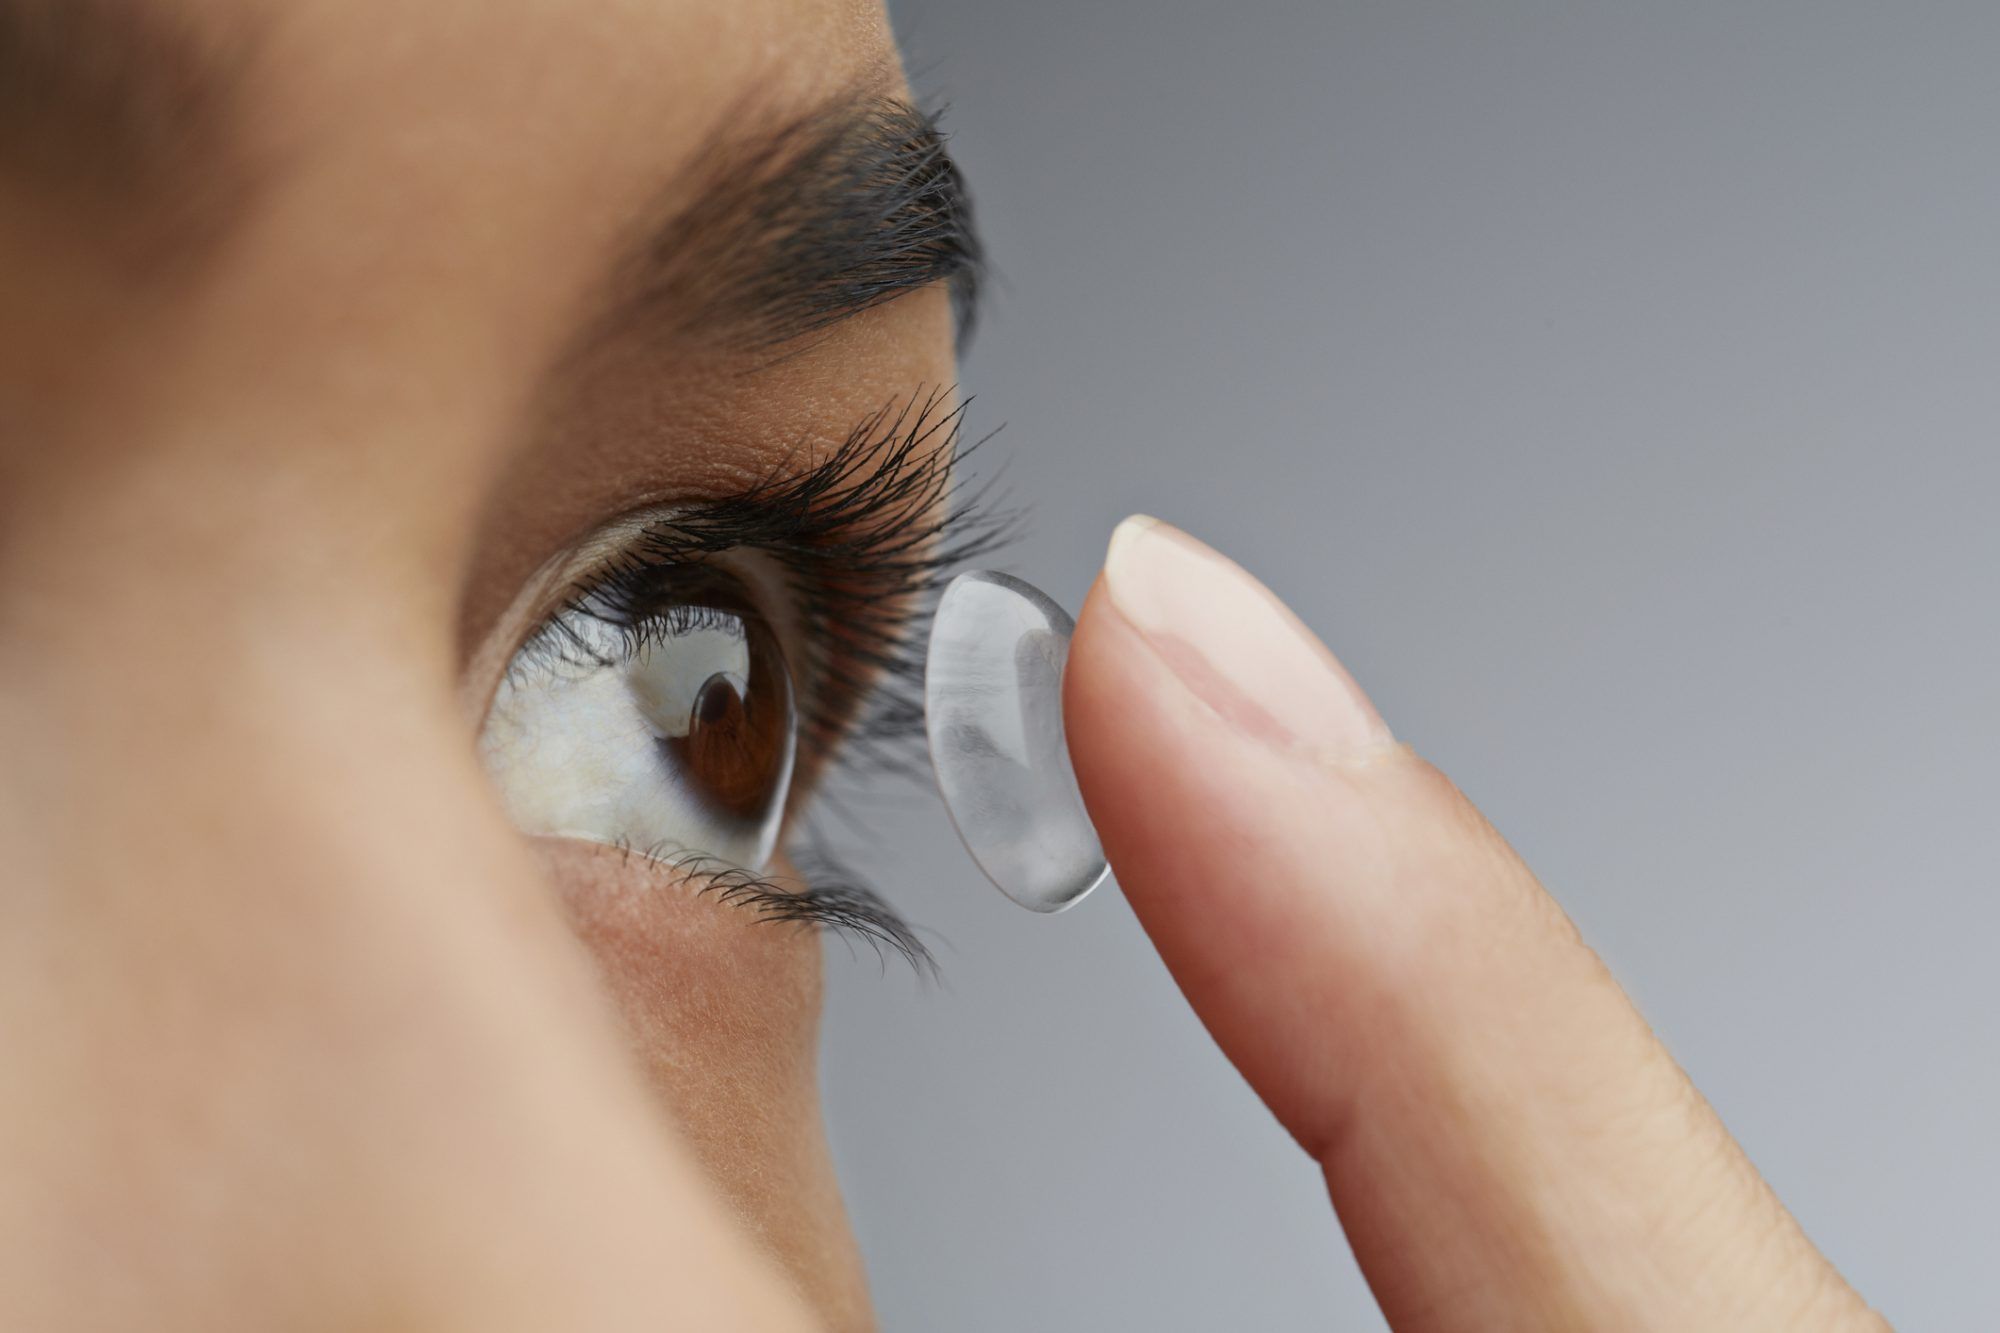 Los expertos dicen que debería dejar de usar lentes de contacto durante la pandemia de coronavirus